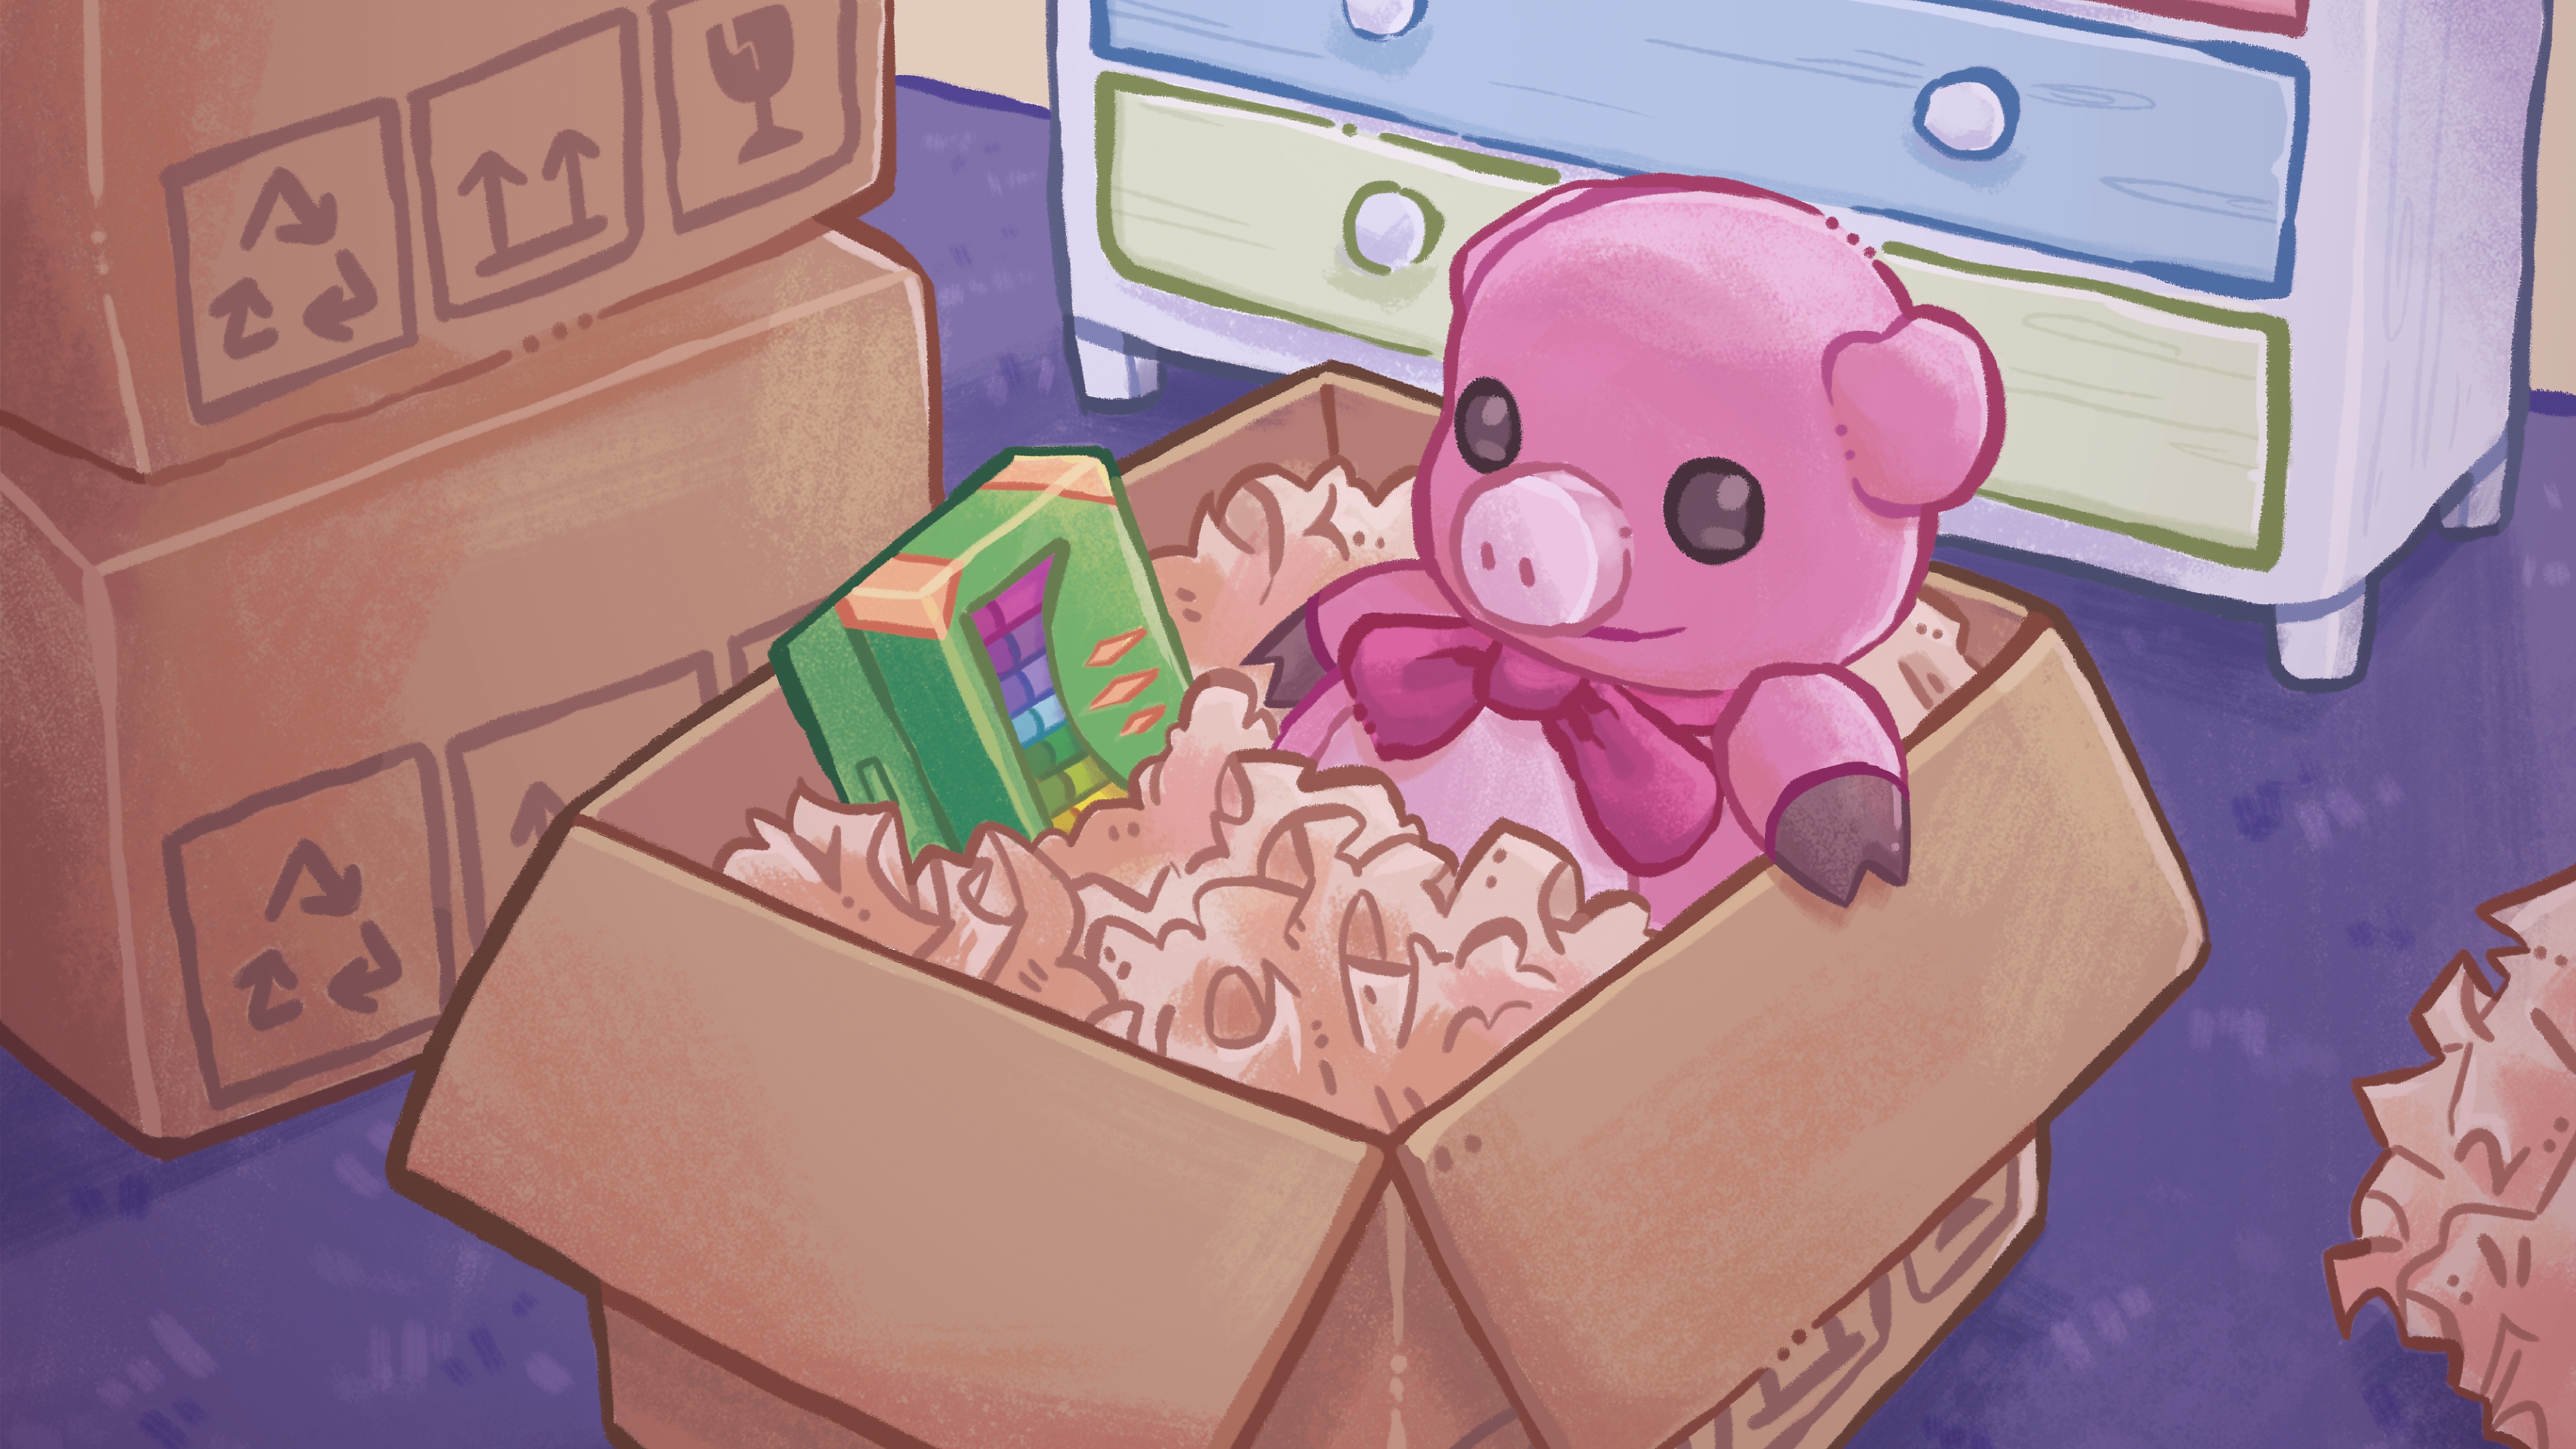 Arte principal del desembalado, que muestra una ilustración colorida dibujada a mano de un oso de peluche y una caja de crayones en una caja de cartón.